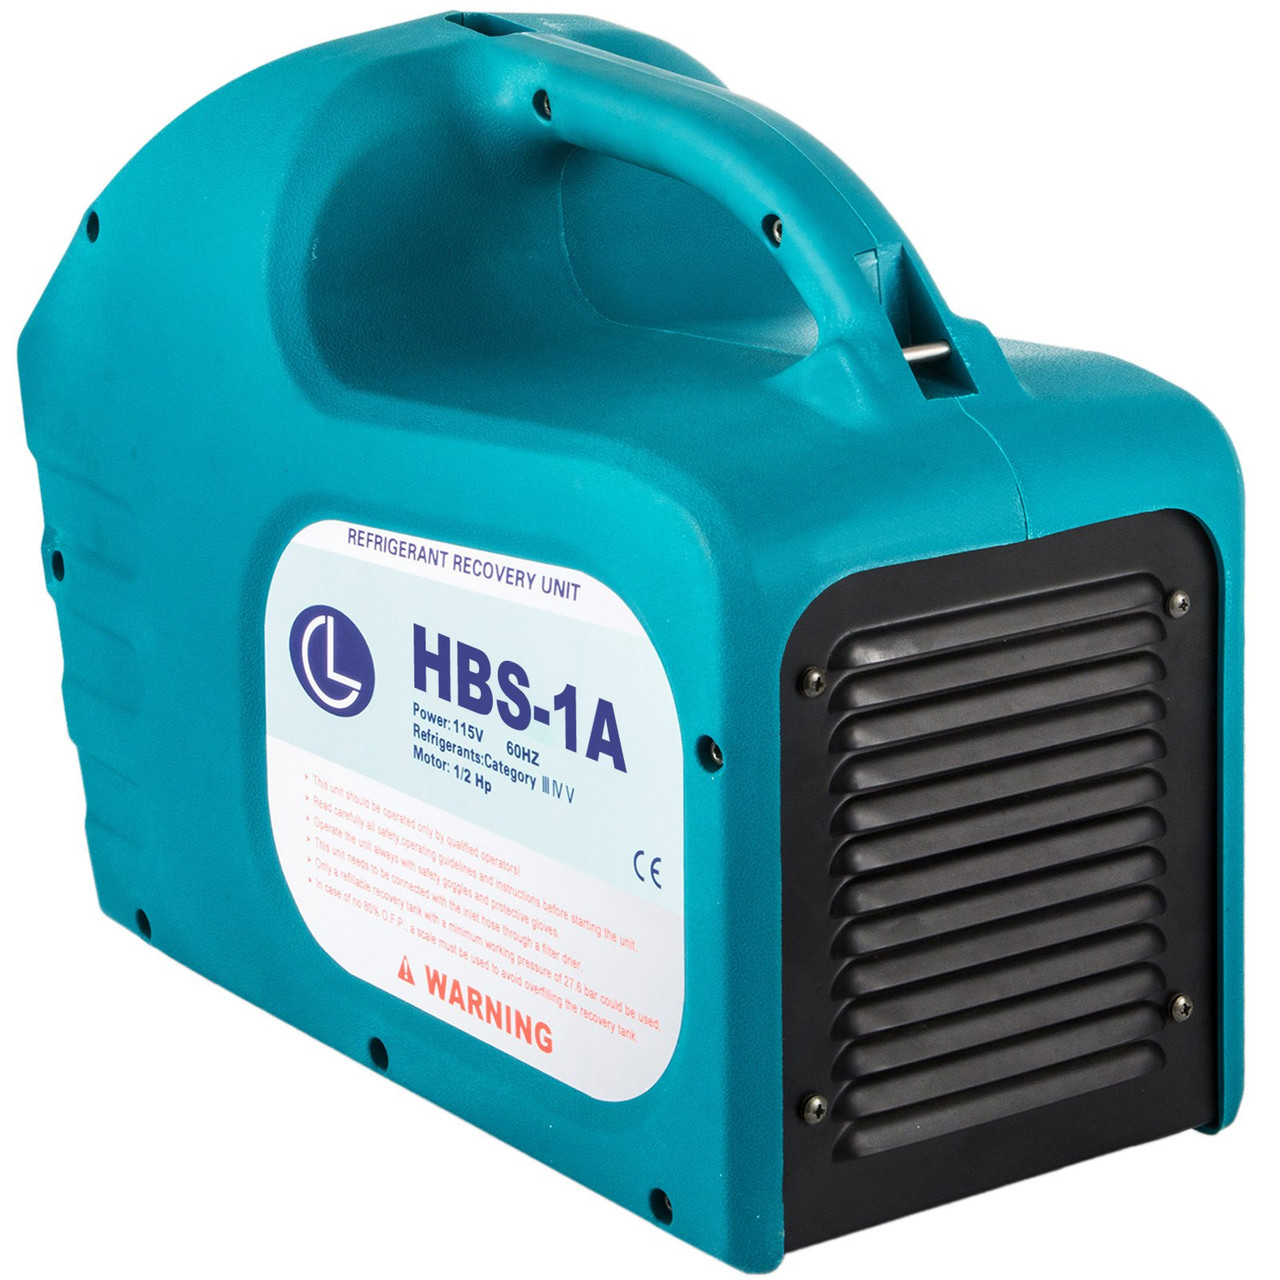 1/2HP Refrigerant Recovery Machine Portable 115V AC Refrigerant Recycling Machine Automotive HVAC 558psi Refrigerant Recovery Unit Air Conditioning Repair Tool (115V)